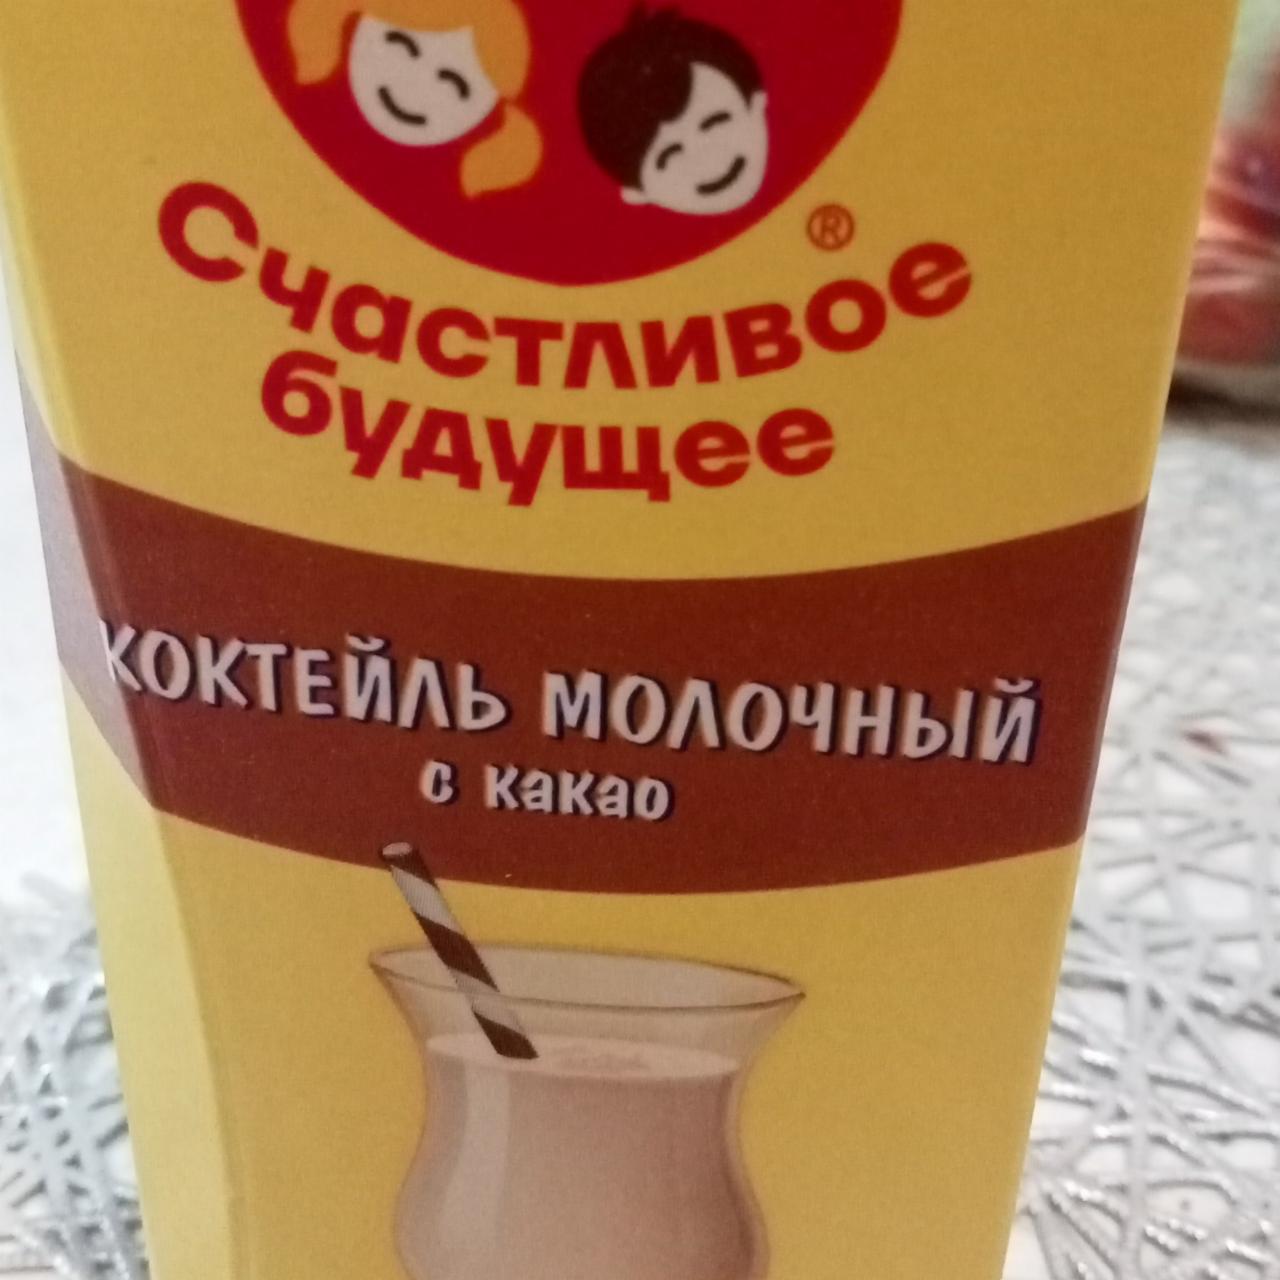 Фото - Коктейль молочный с какао Счастливое будущее